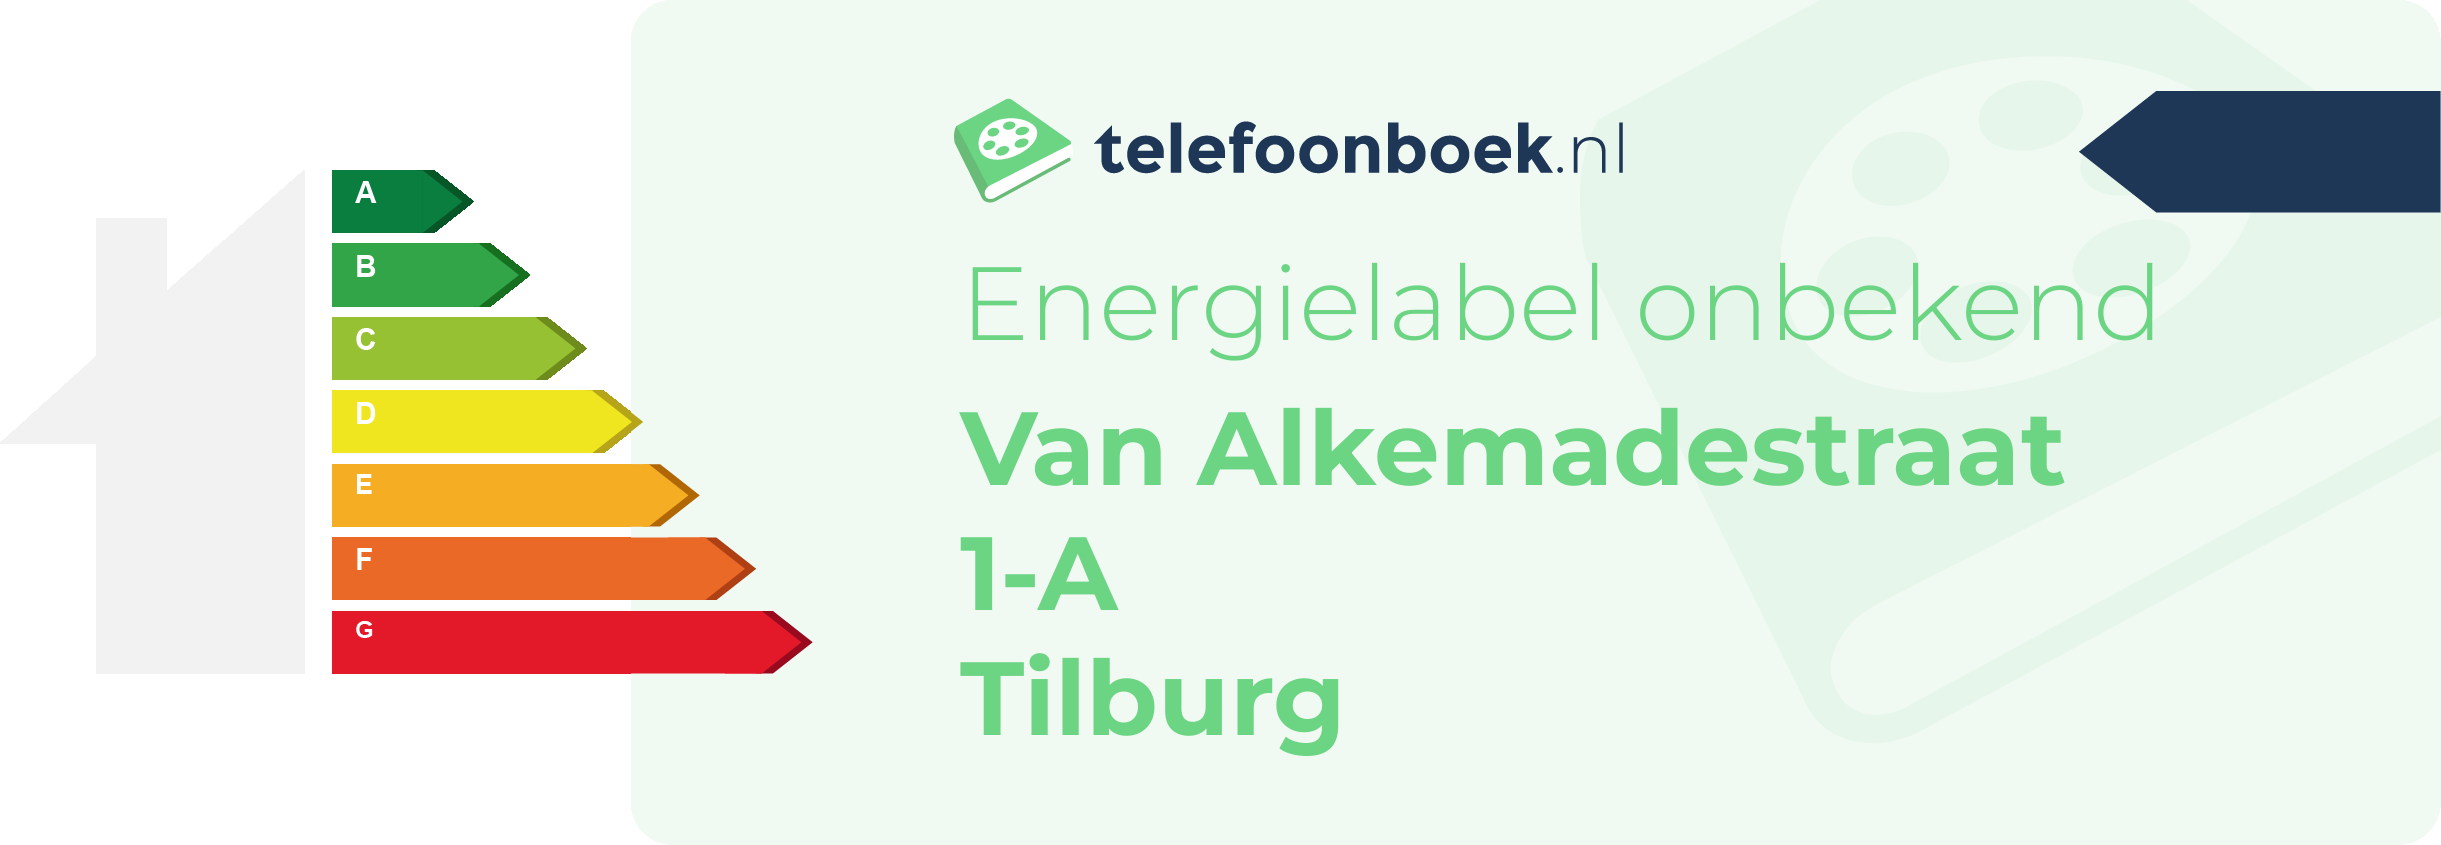 Energielabel Van Alkemadestraat 1-A Tilburg